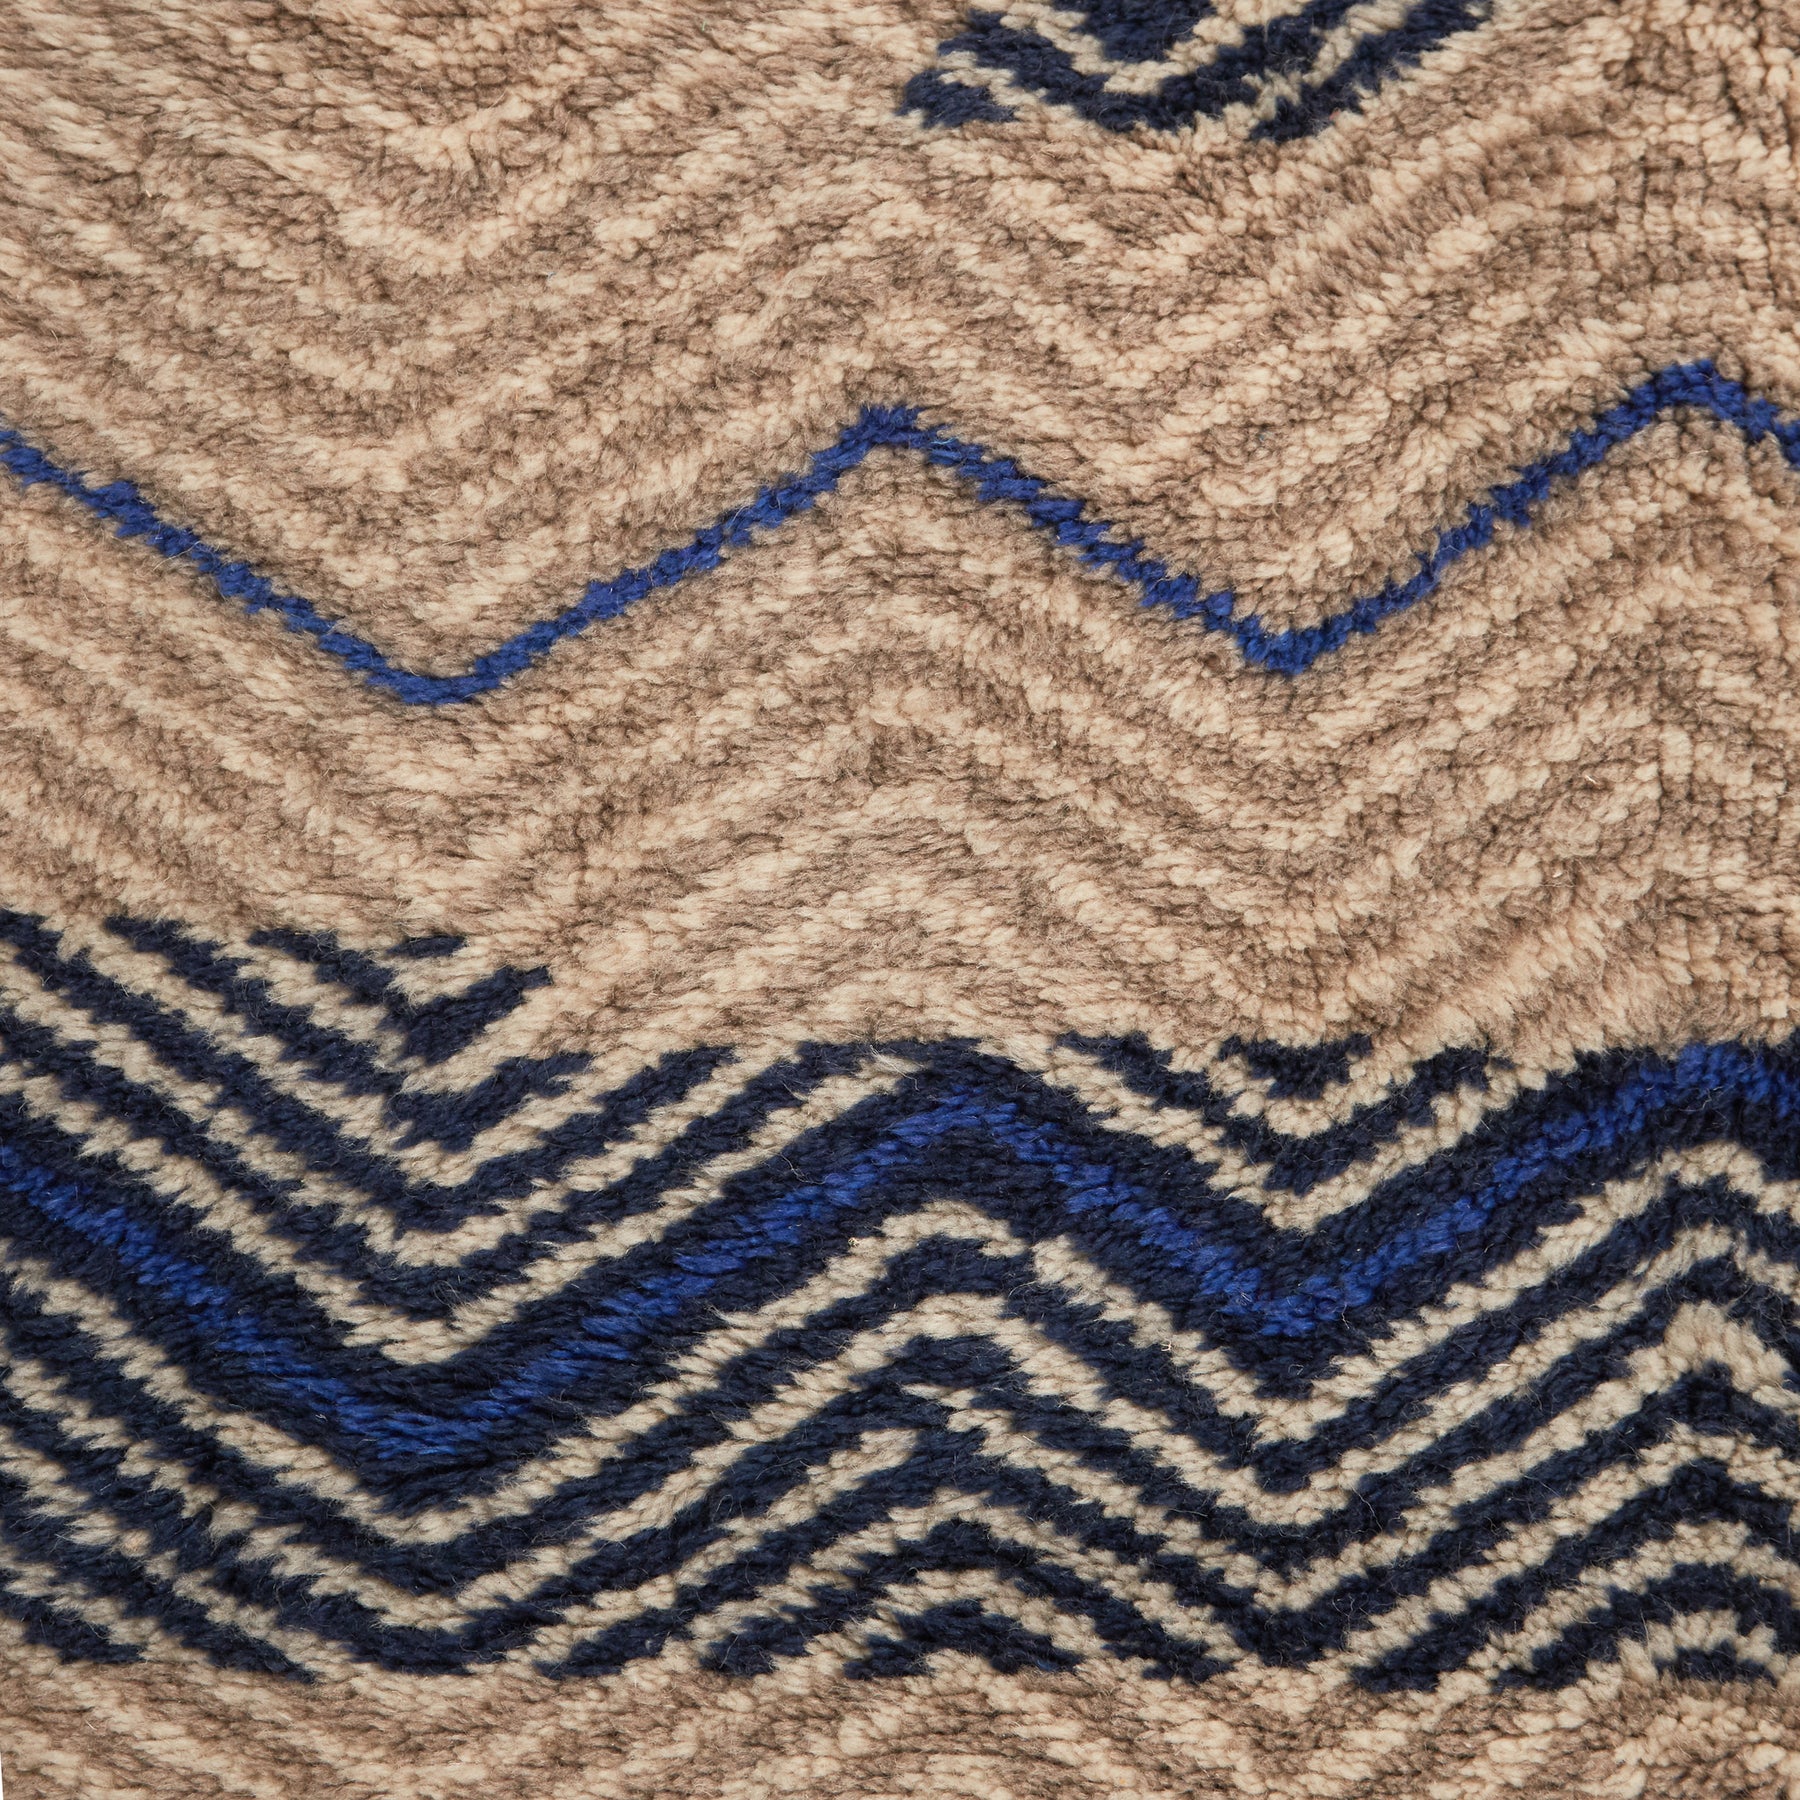 dettaglio di una parte di un tappeto beni mrirt design contemporaneo color tortora bianco linee blu